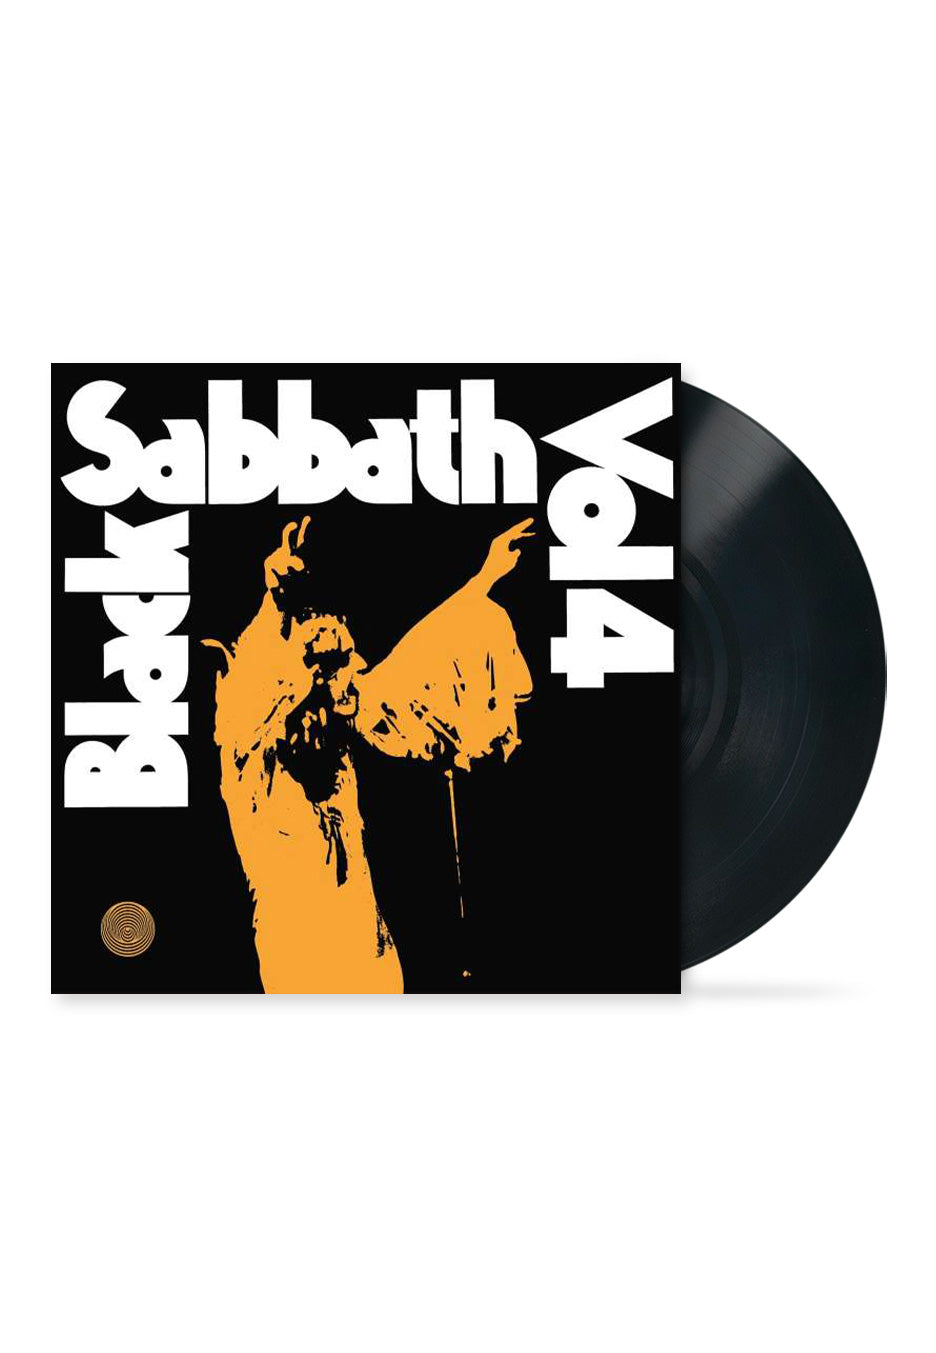 Black Sabbath - Vol. 4 - Vinyl